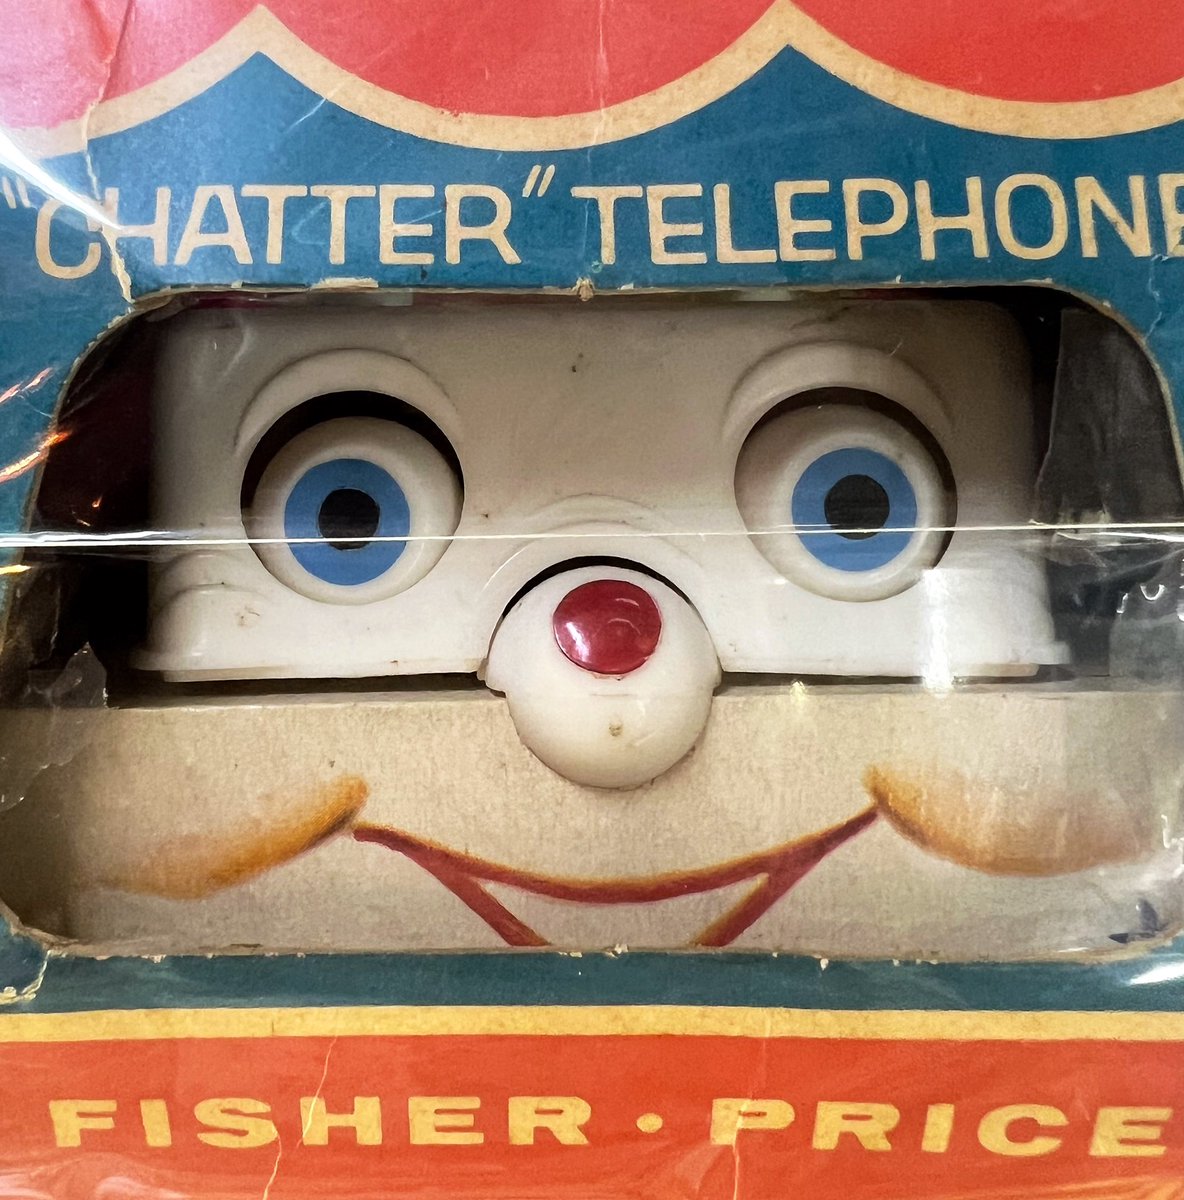 #Vintage
#Deadstock
#ChatterTelephone
#FisherPrice
#VintageToy
#ForSale
#通販OK
#ヴィンテージ
#デッドストック
#チャッターフォン 
#フィッシャープライス
#USトイ
#ヴィンテージトイ
#ヴィンテージToy